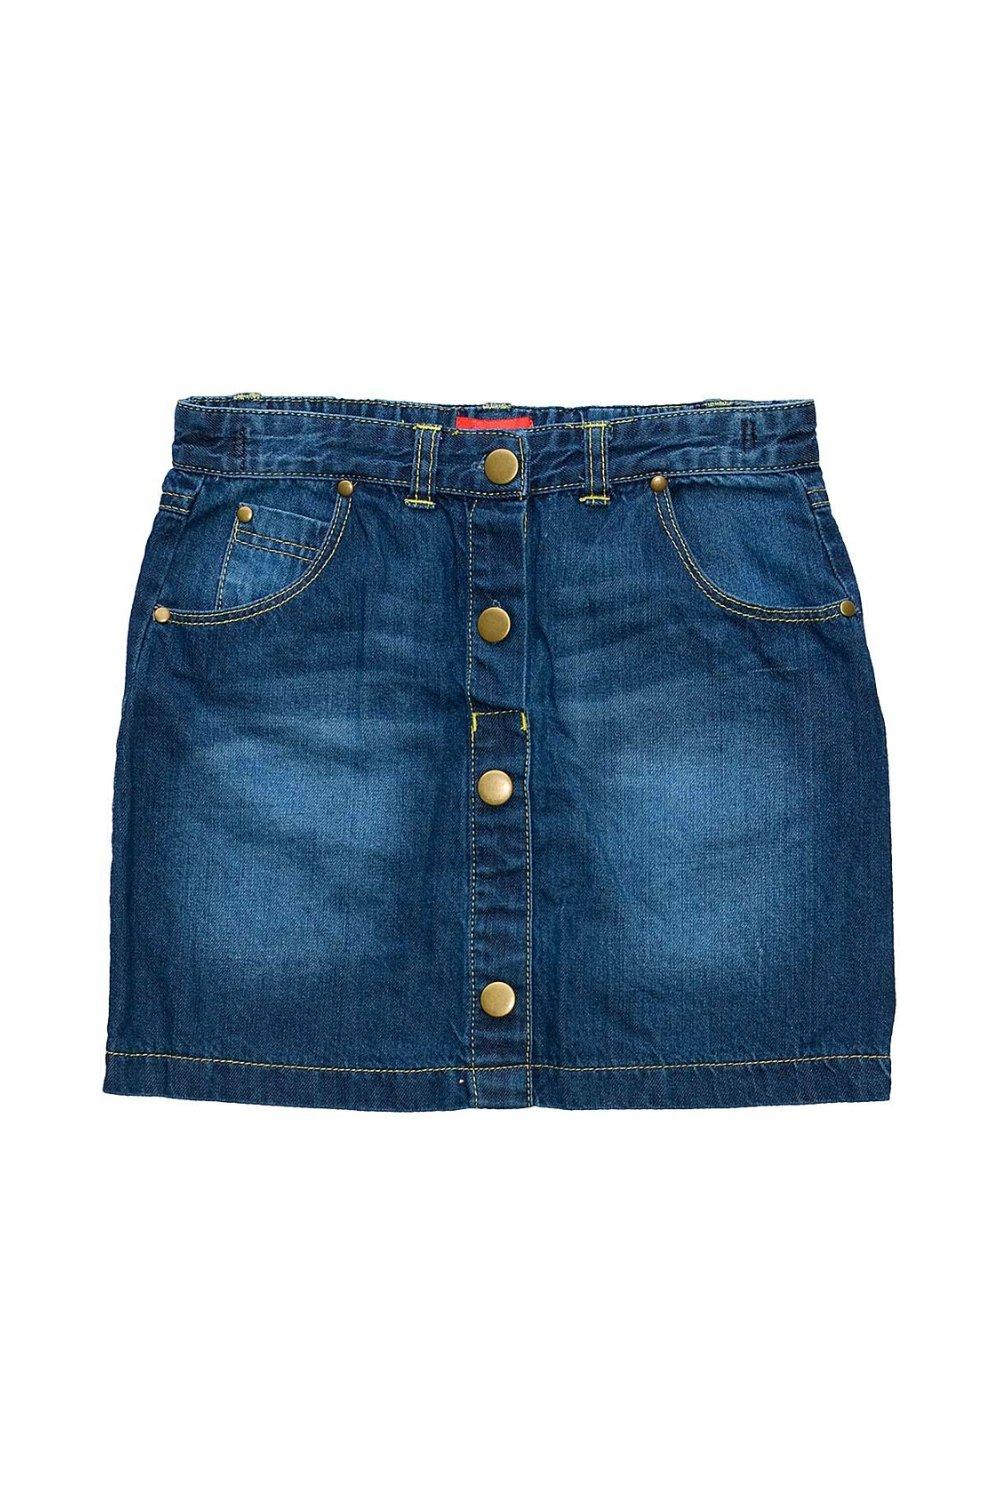 Джинсовая юбка на пуговицах Cozy n Dozy, синий юбка джинсовая мини стрейч карманы размер 3xl черный